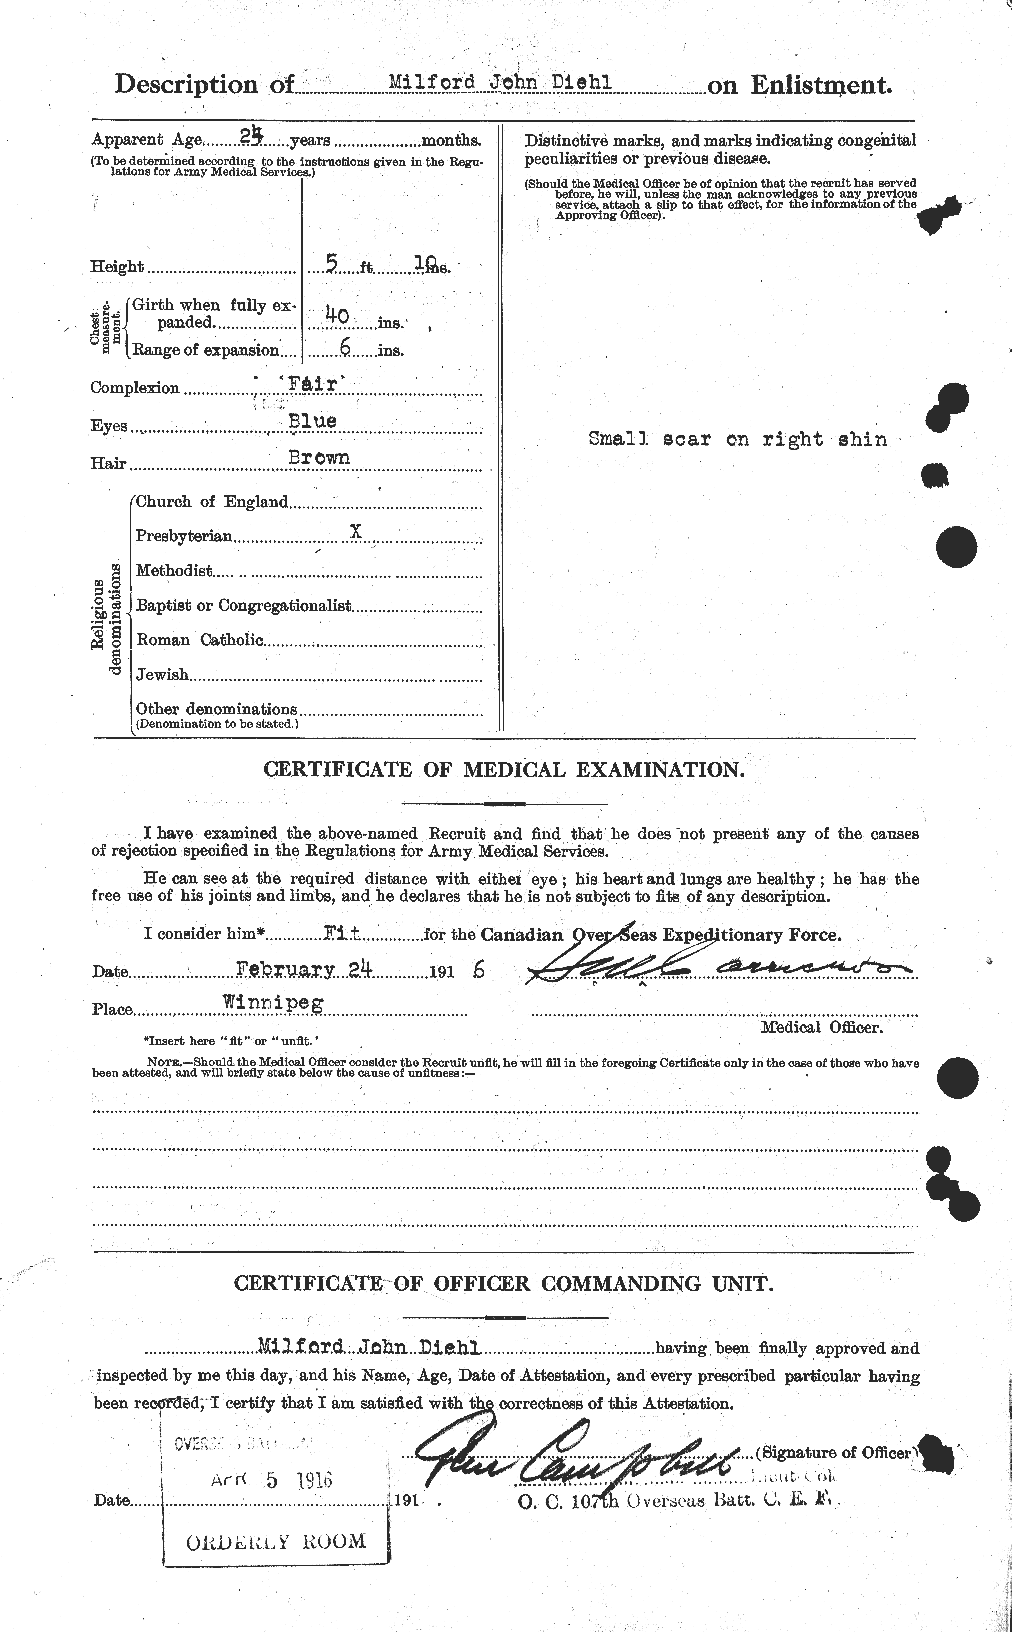 Dossiers du Personnel de la Première Guerre mondiale - CEC 291761b